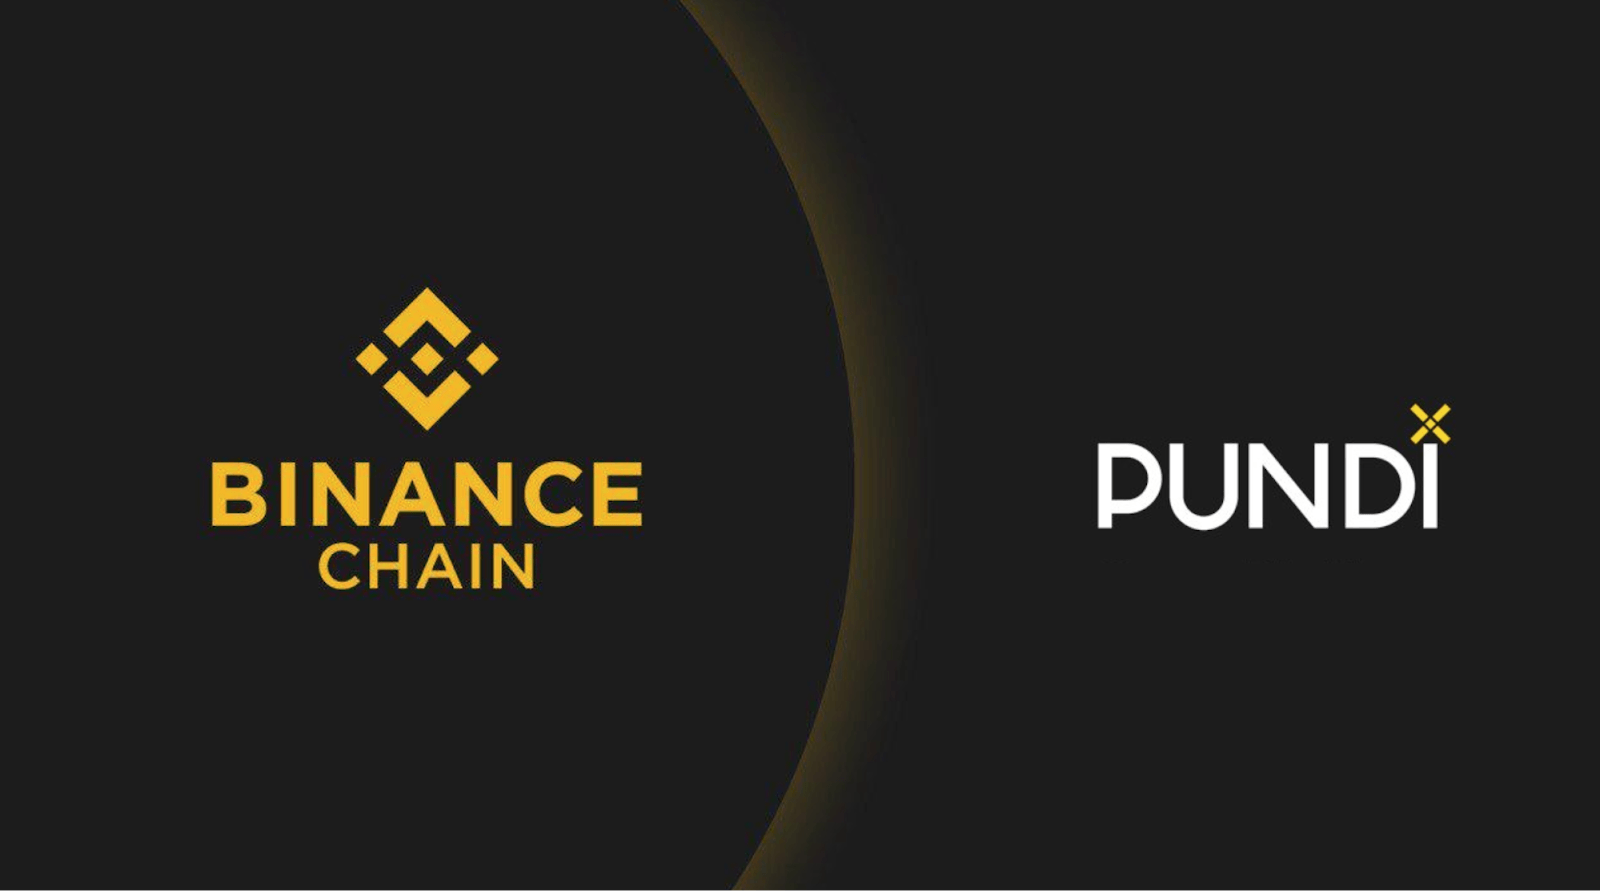 مشروع PundiX يدعم بلوكشين Binance في تحديث جديد - تقني نت العملات الرقمية